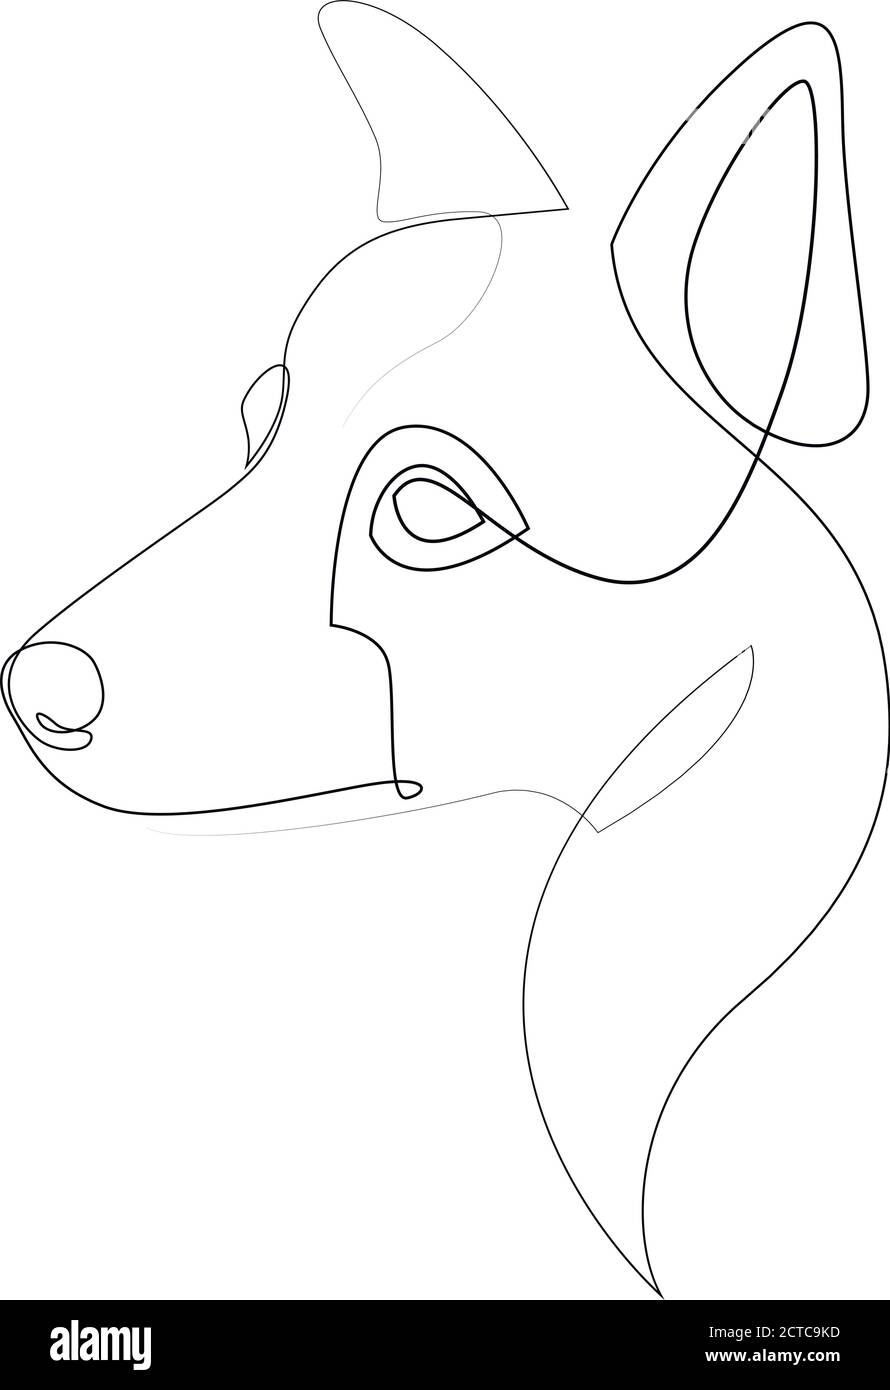 Border Collie Vektor Hund Porträt. Durchgehende Linie. Zeichnung der Hundelinie Stock Vektor